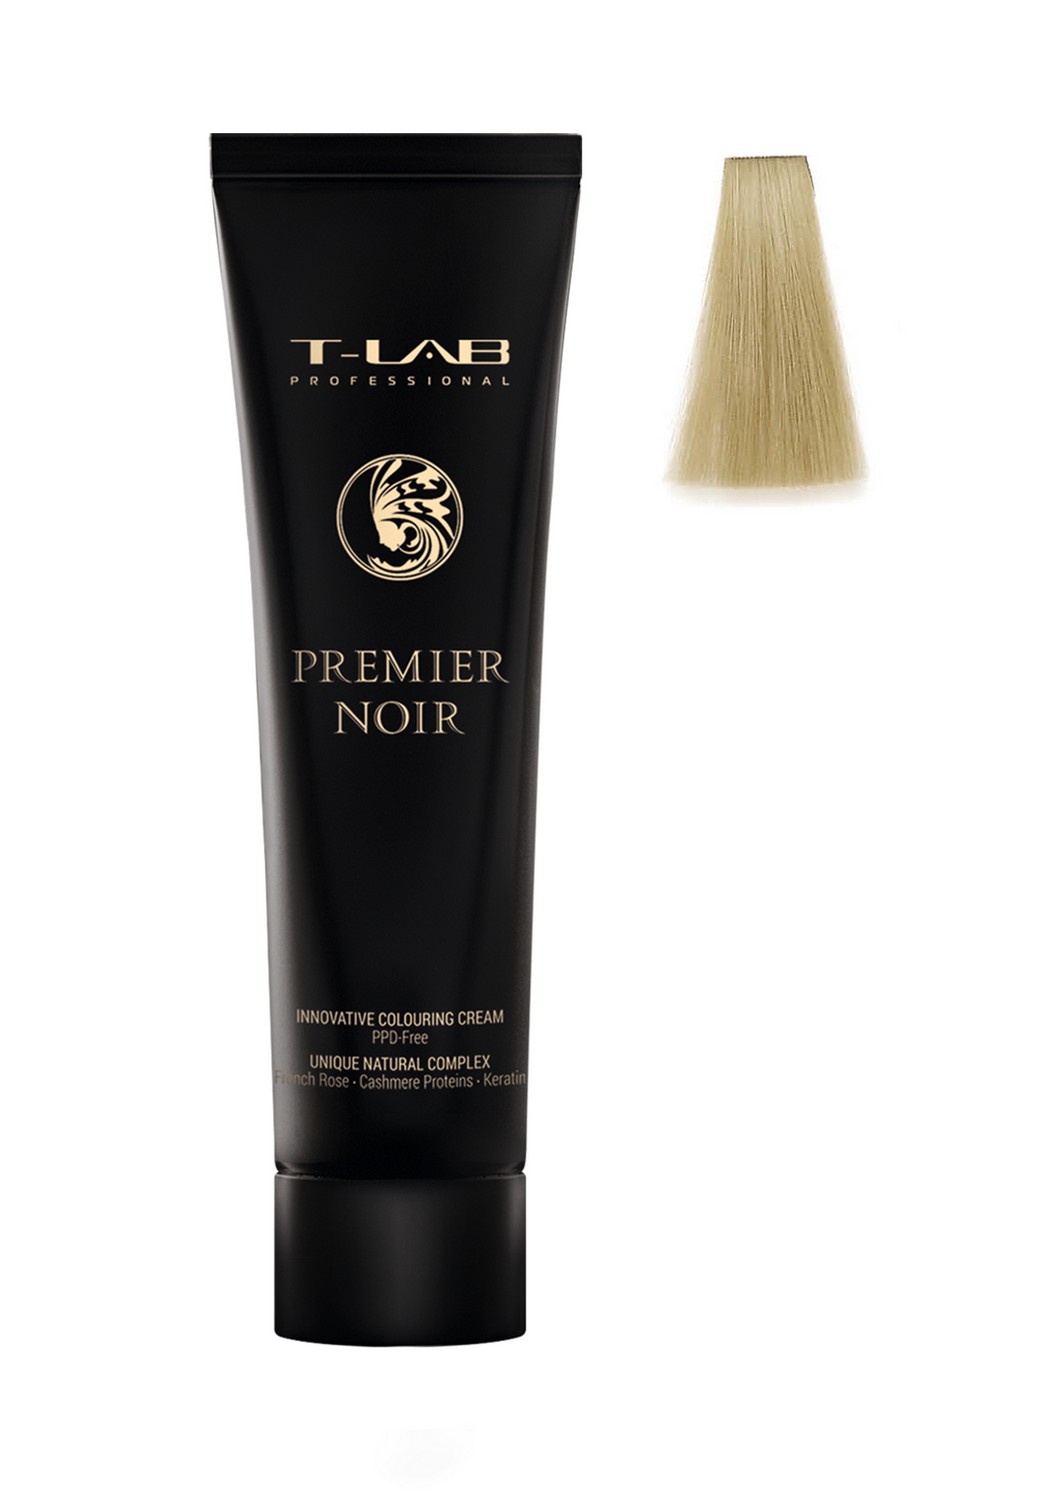 Крем-краска T-LAB Professional Premier Noir colouring cream, оттенок 00 (clear) - фото 2